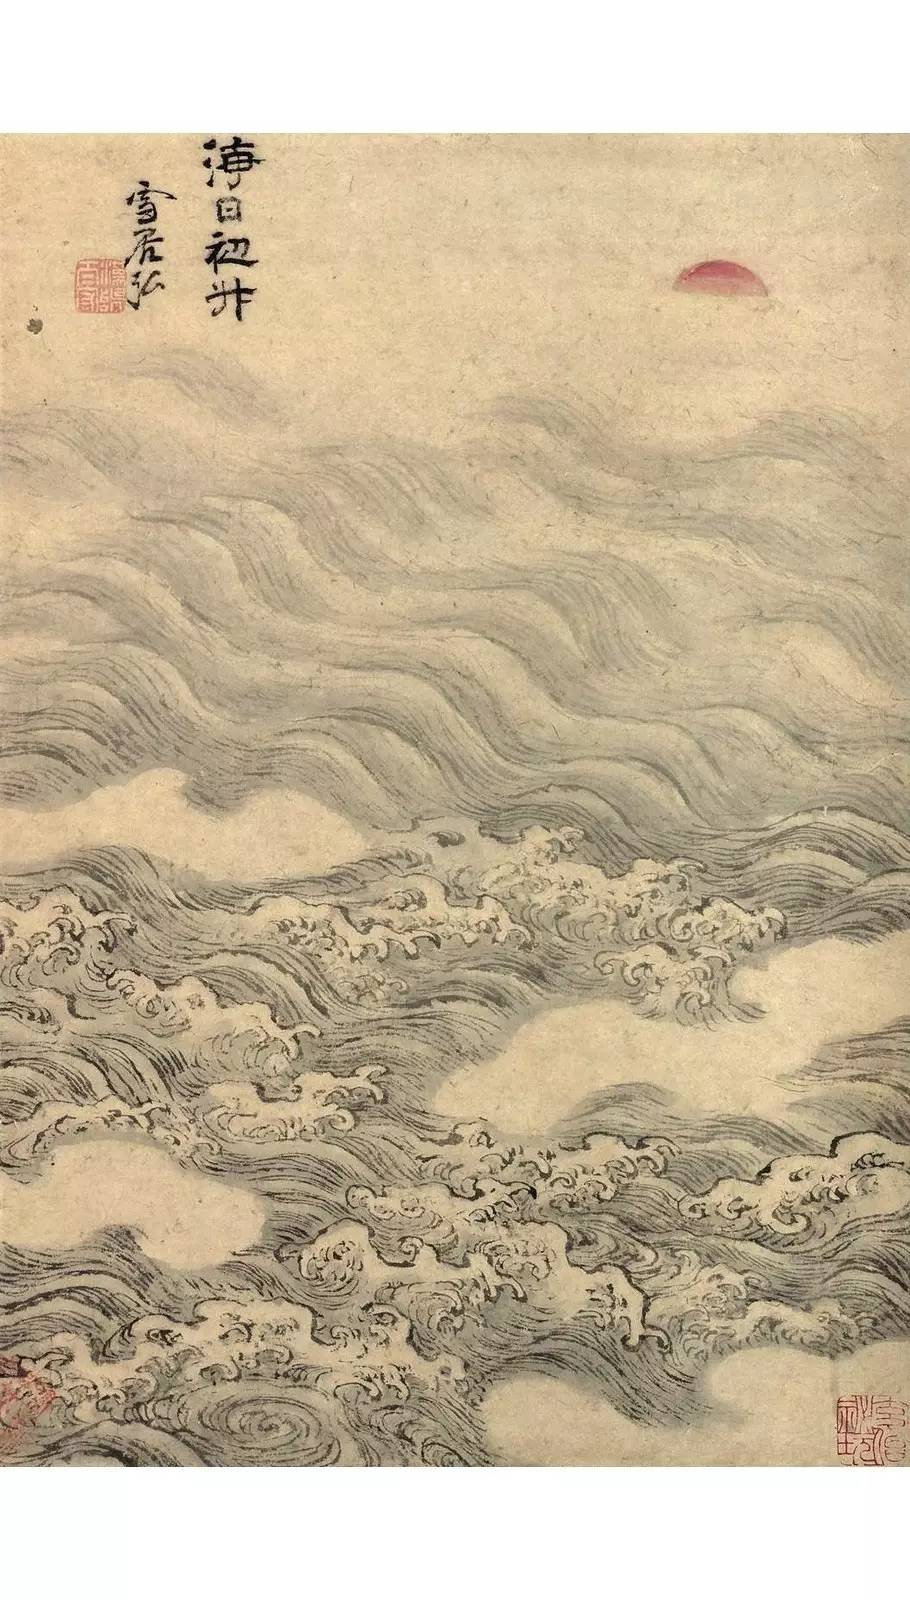 中国画中的那些潺潺流水与波涛汹涌太美